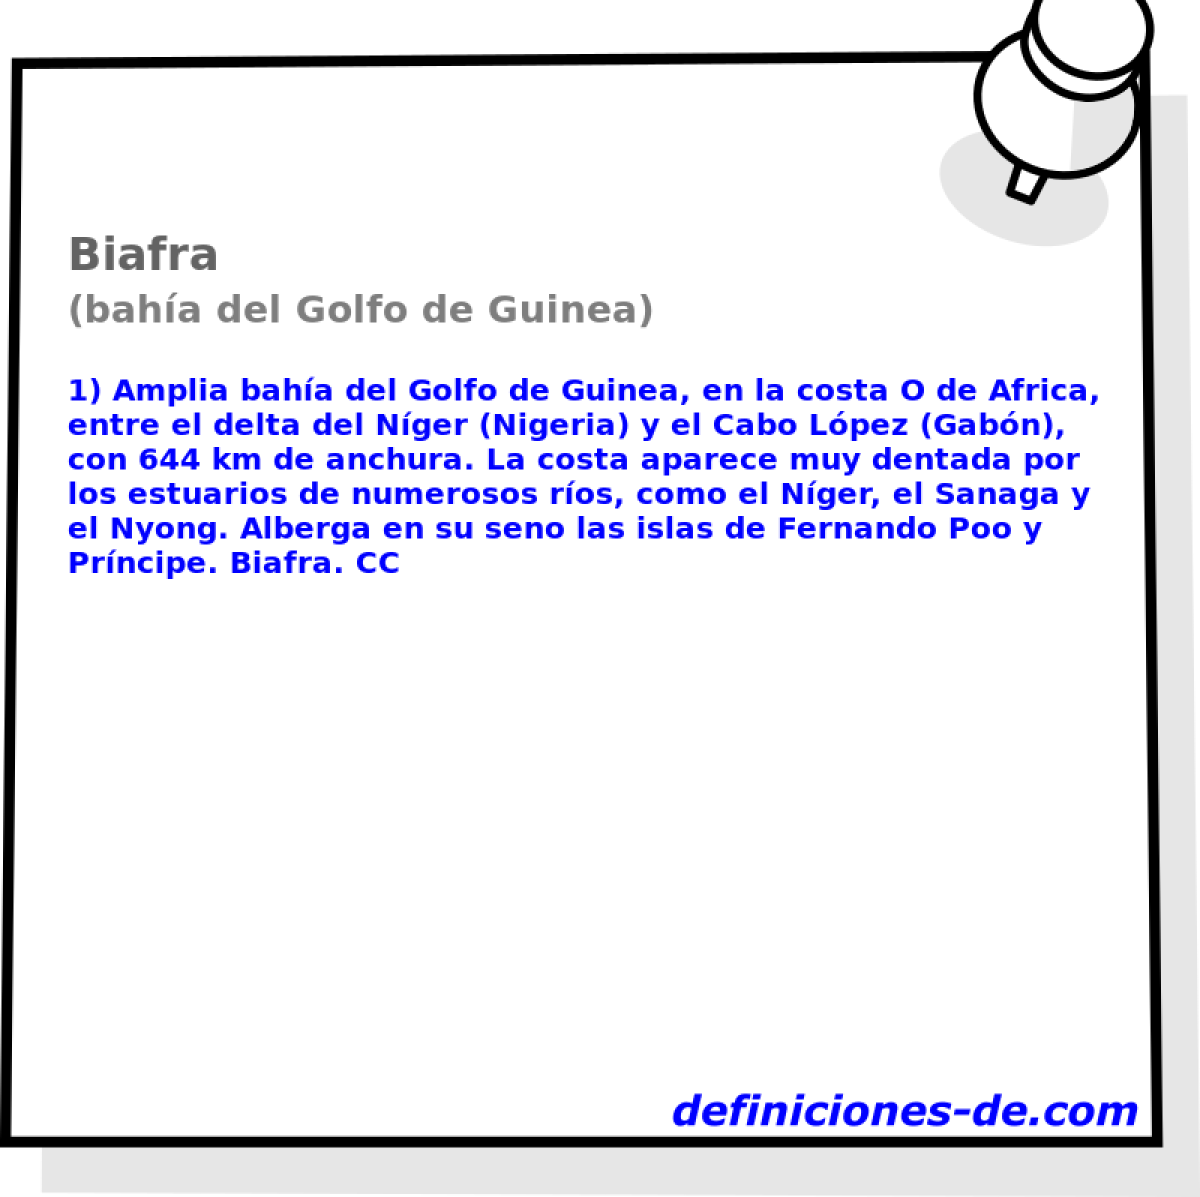 Biafra (baha del Golfo de Guinea)